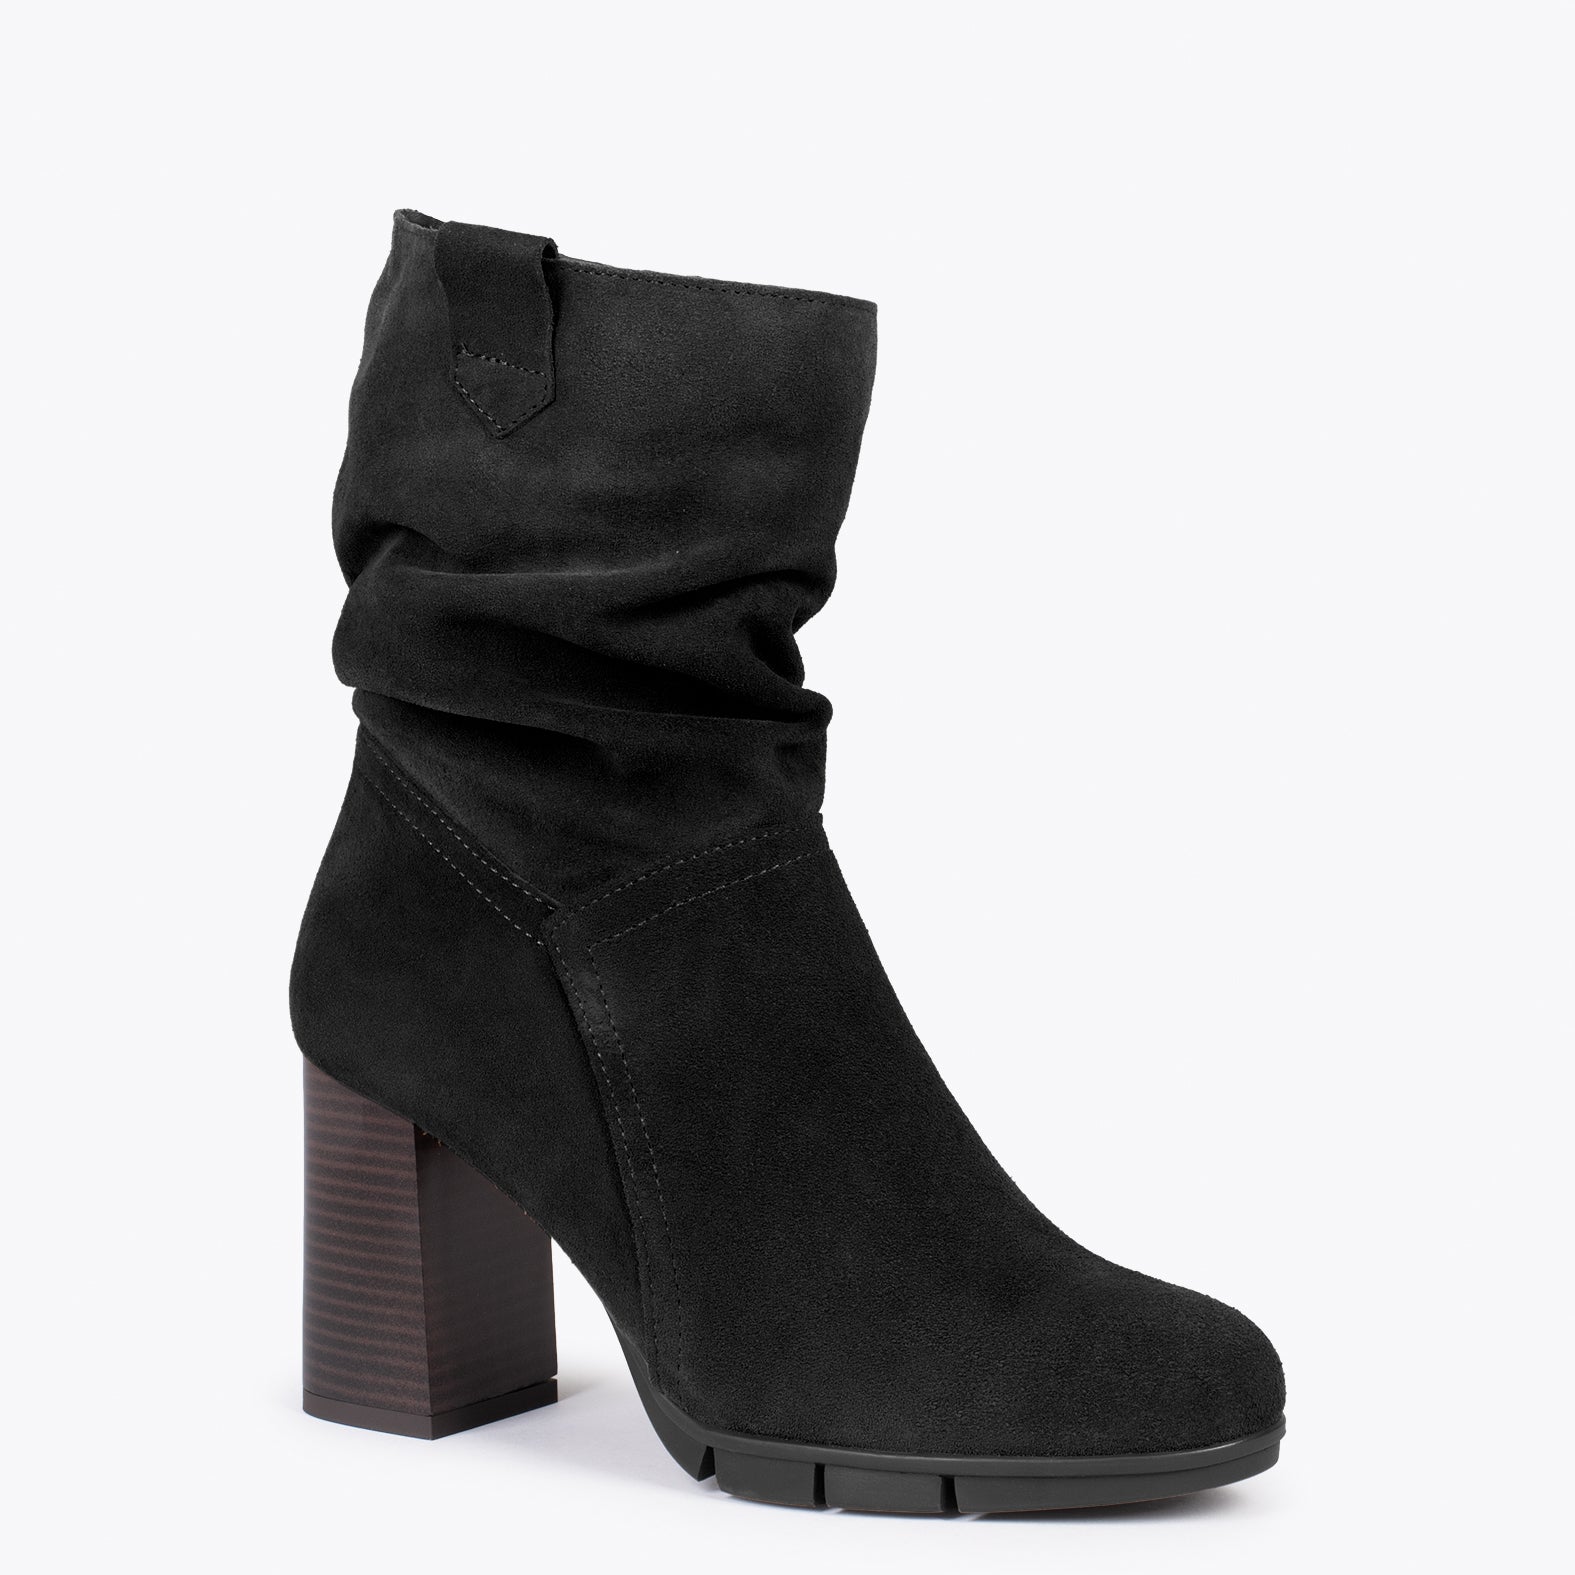 WAVE – BLACK high heel booties with zipper